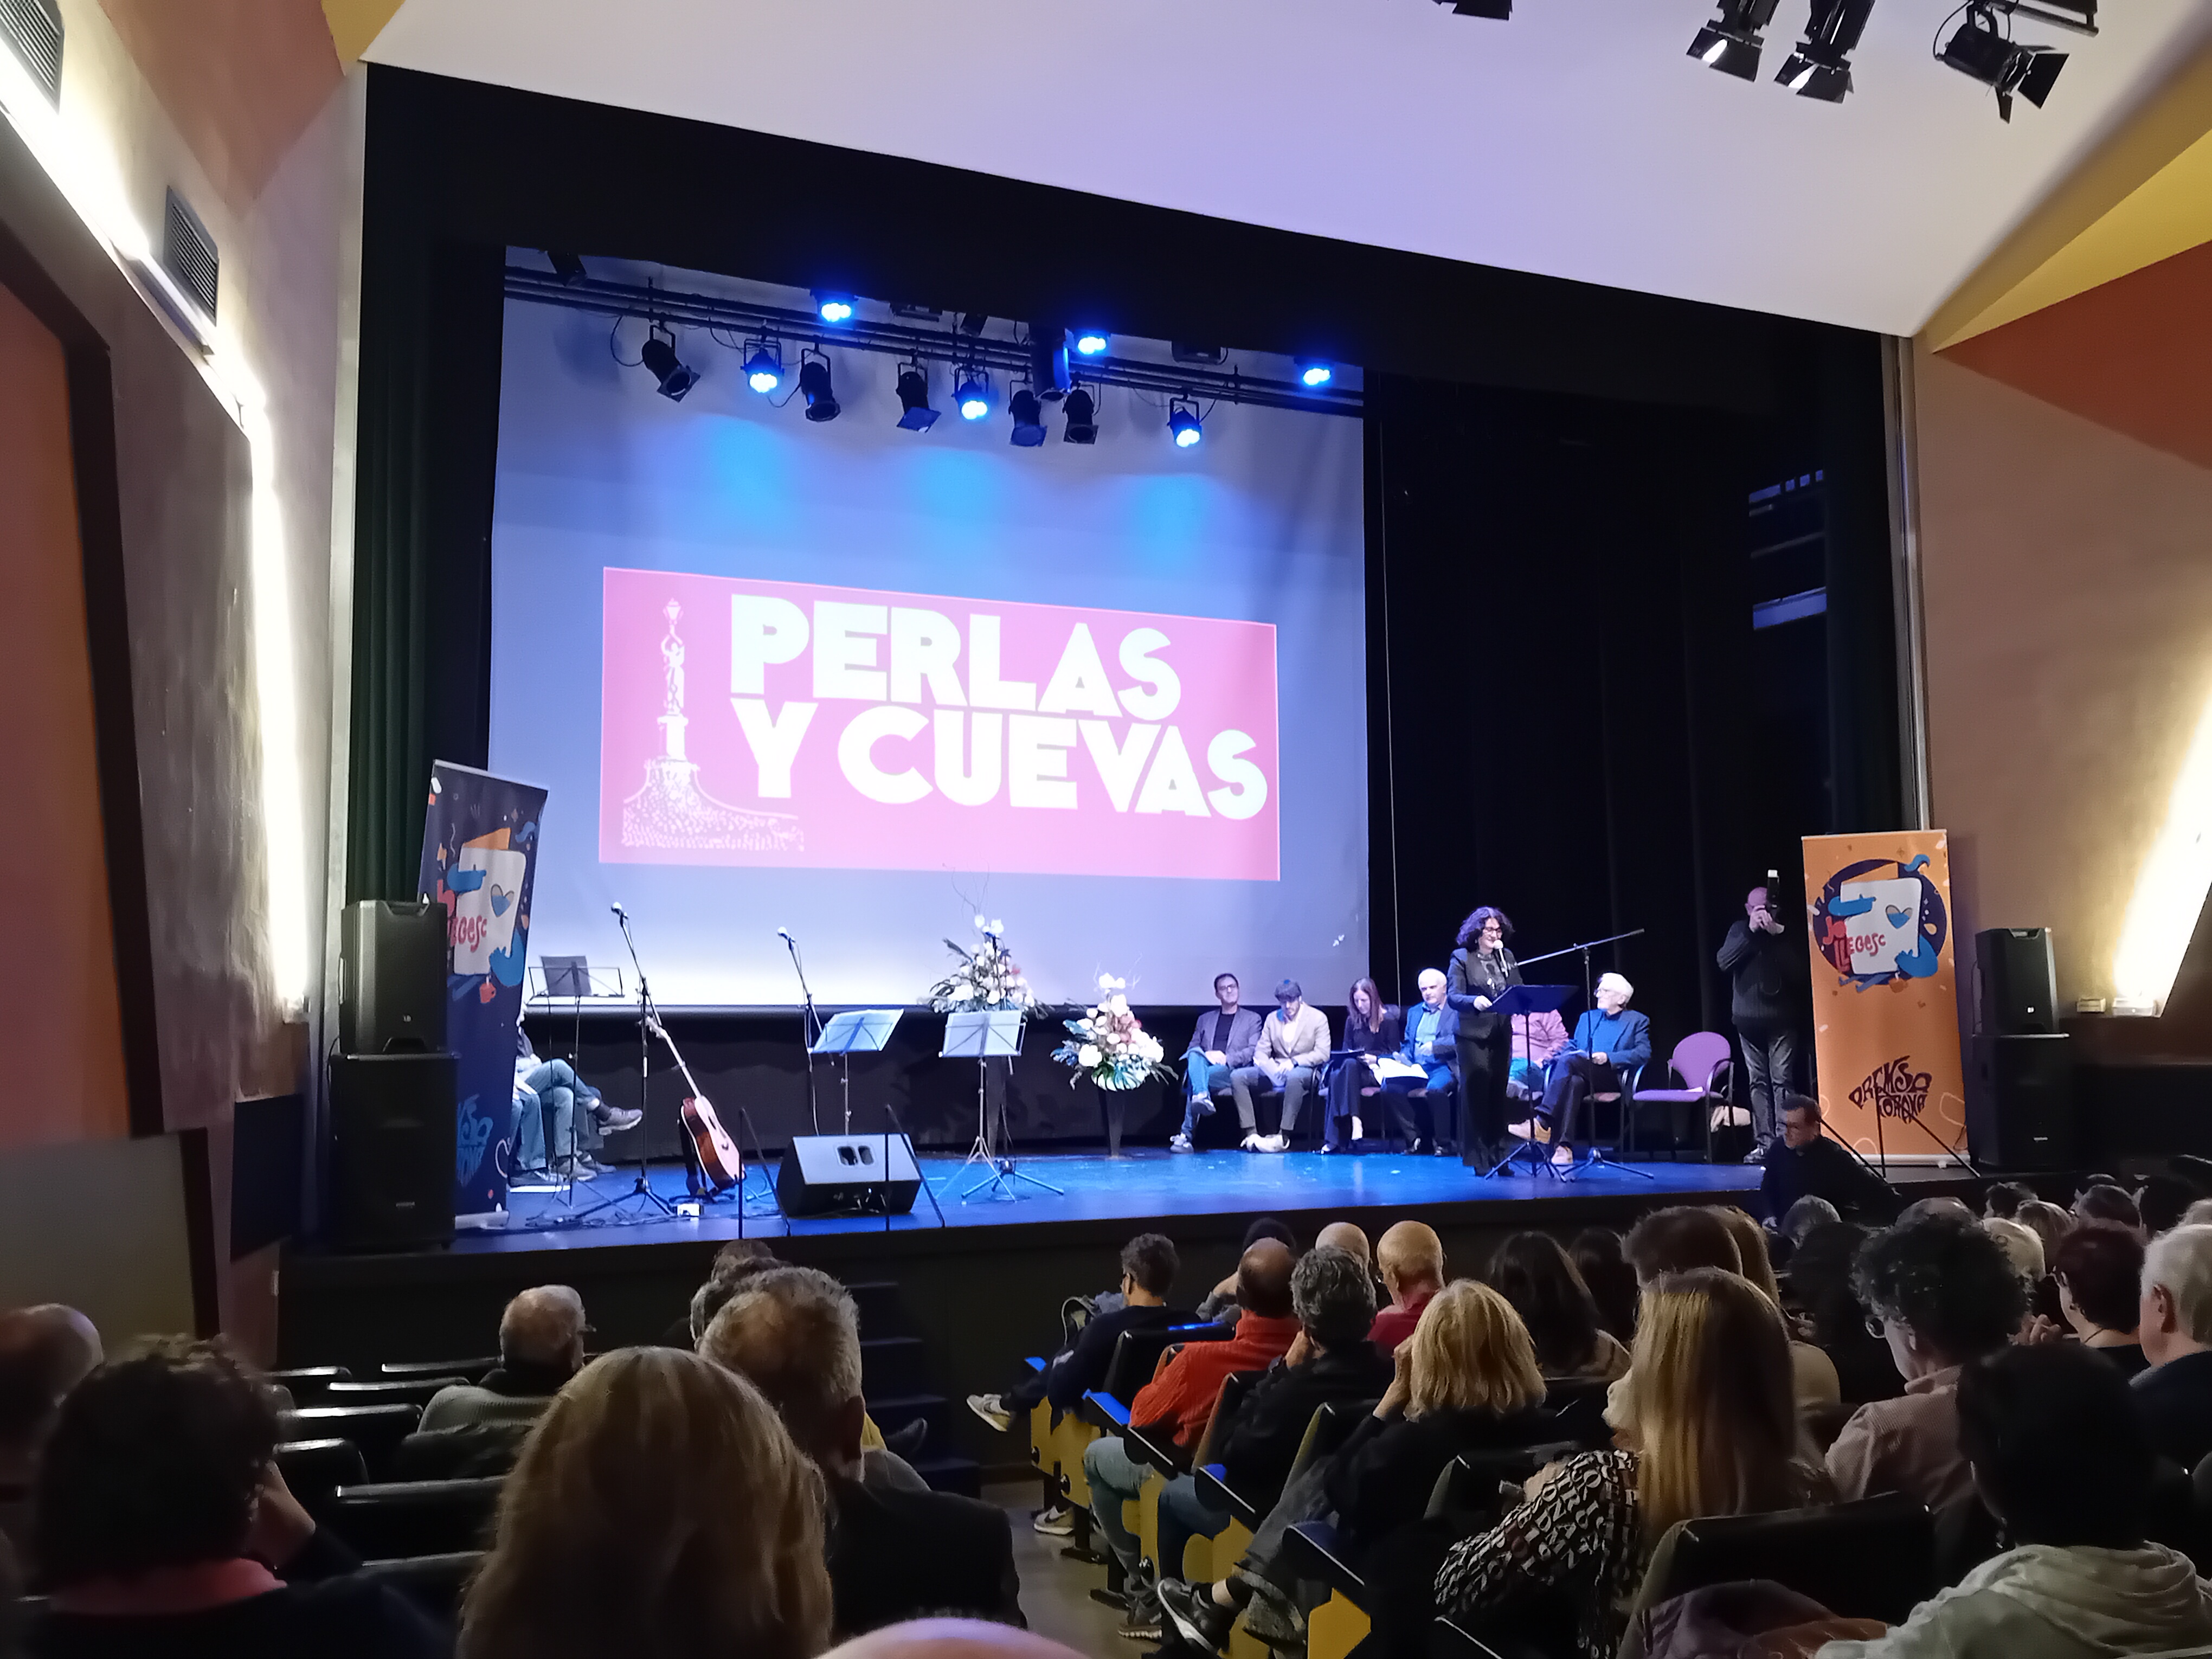 La revista Perlas y Cuevas tanca després de 63 anys d'existència. 